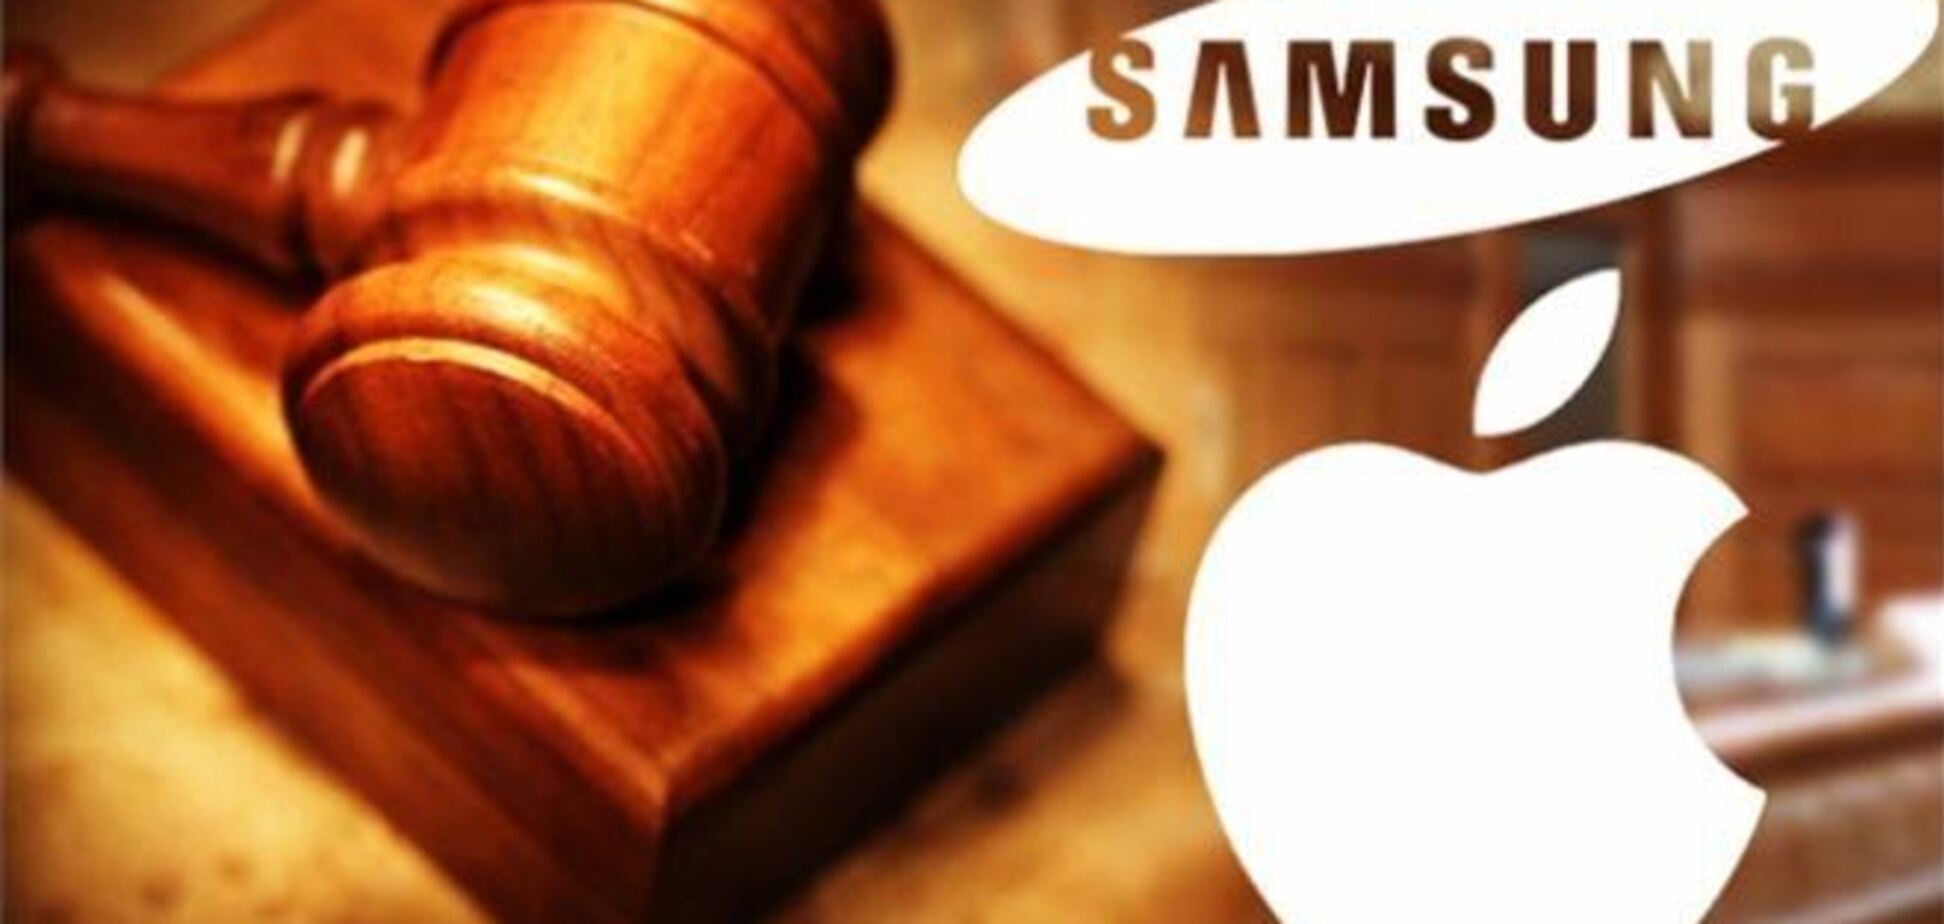 Cуд обязал Samsung выплатить Apple $290 млн